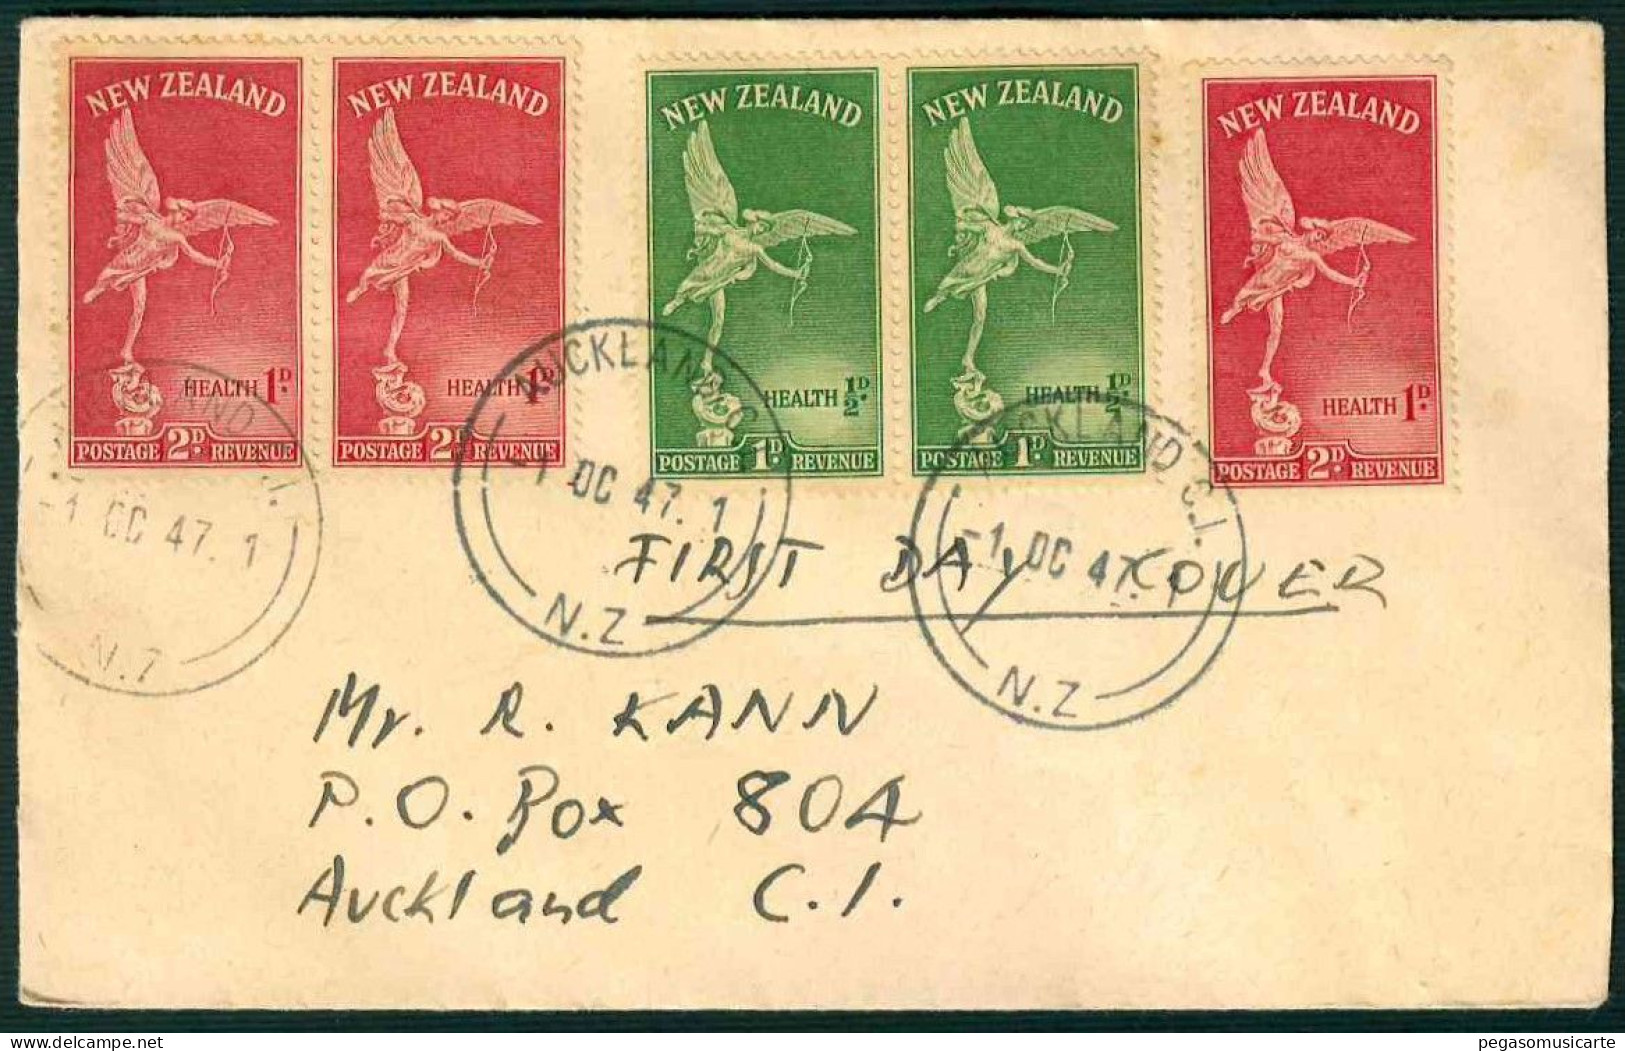 VX377  - NEW ZEALAND 1947 - FIRST DAY COVER - AUCKLAND - Briefe U. Dokumente